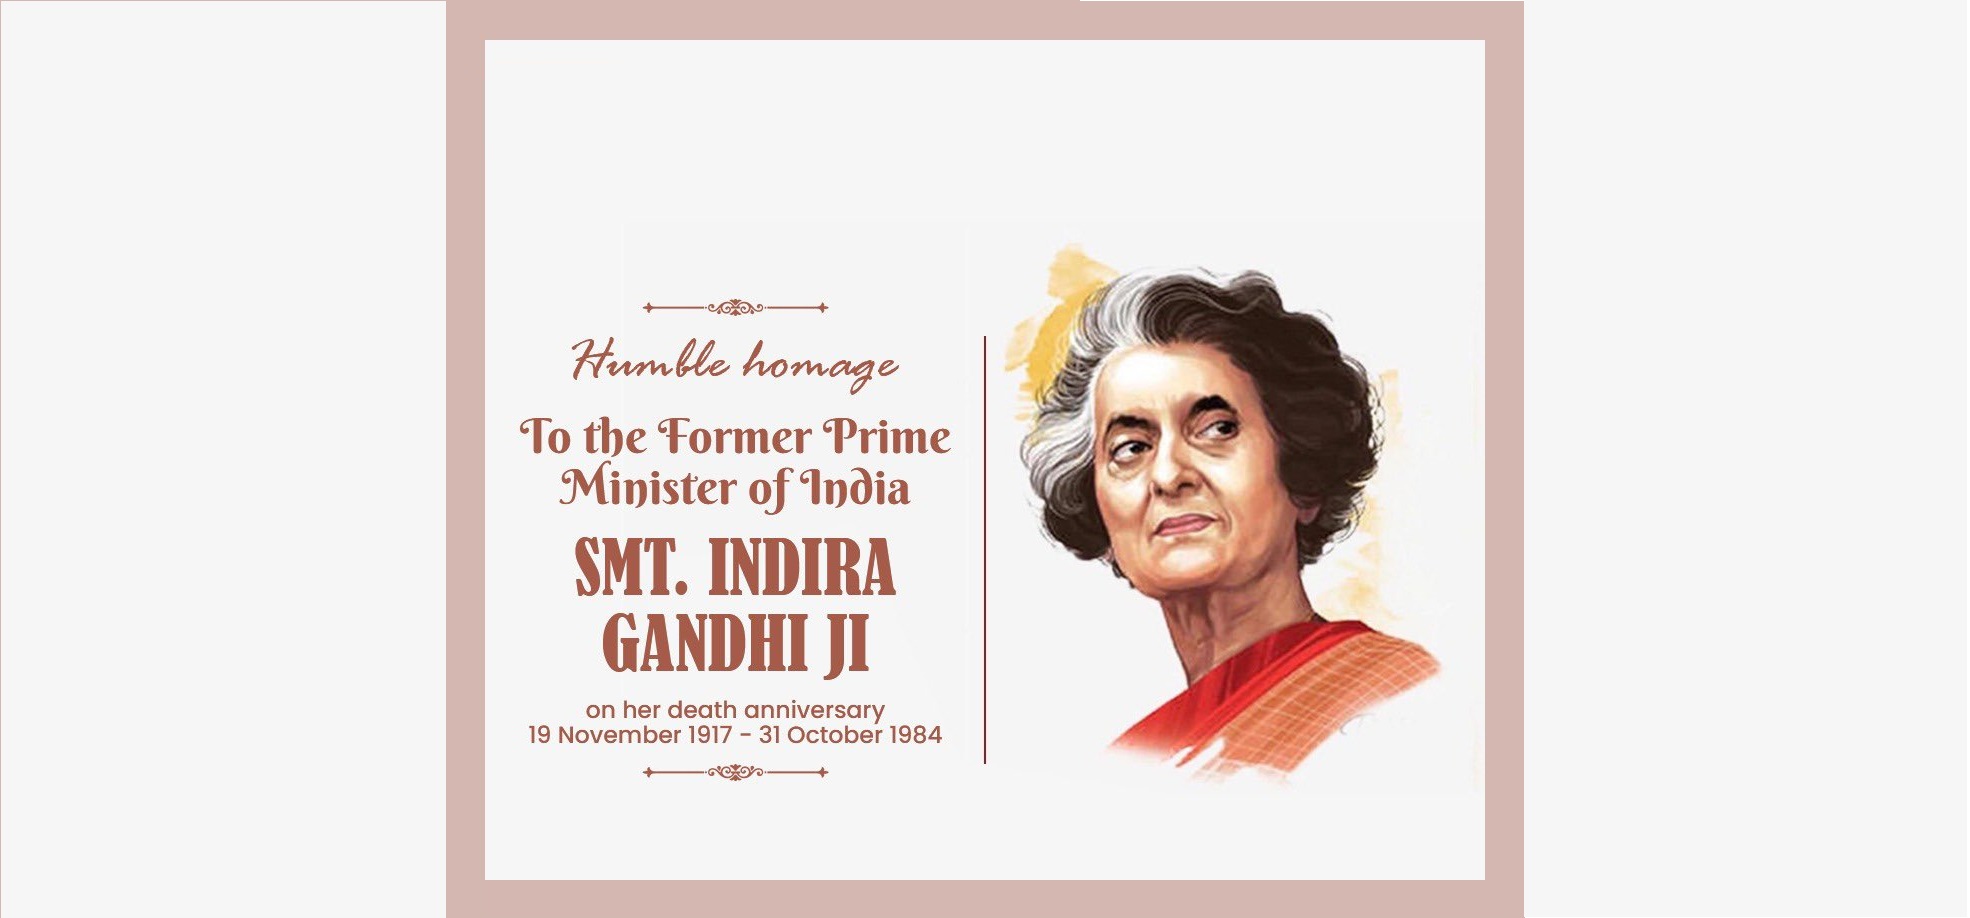 इंदिरा गांधी की पुण्यतिथि पर अख़बारों में विज्ञापन नहीं देने पर पंजाब सरकार निशाने पर